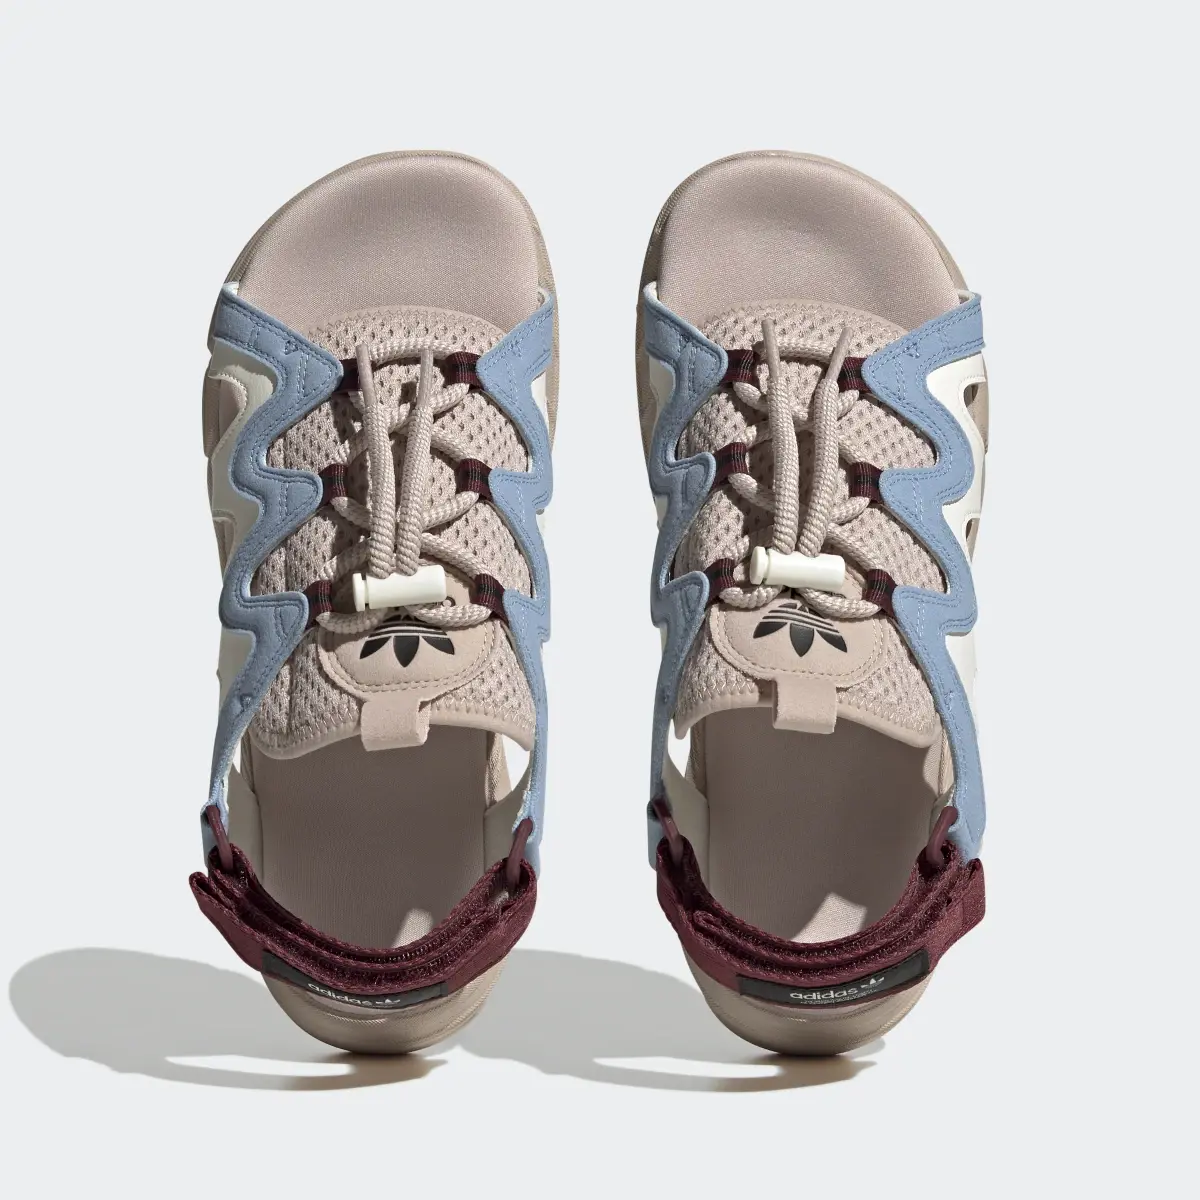 Adidas Astir Sandals. 3